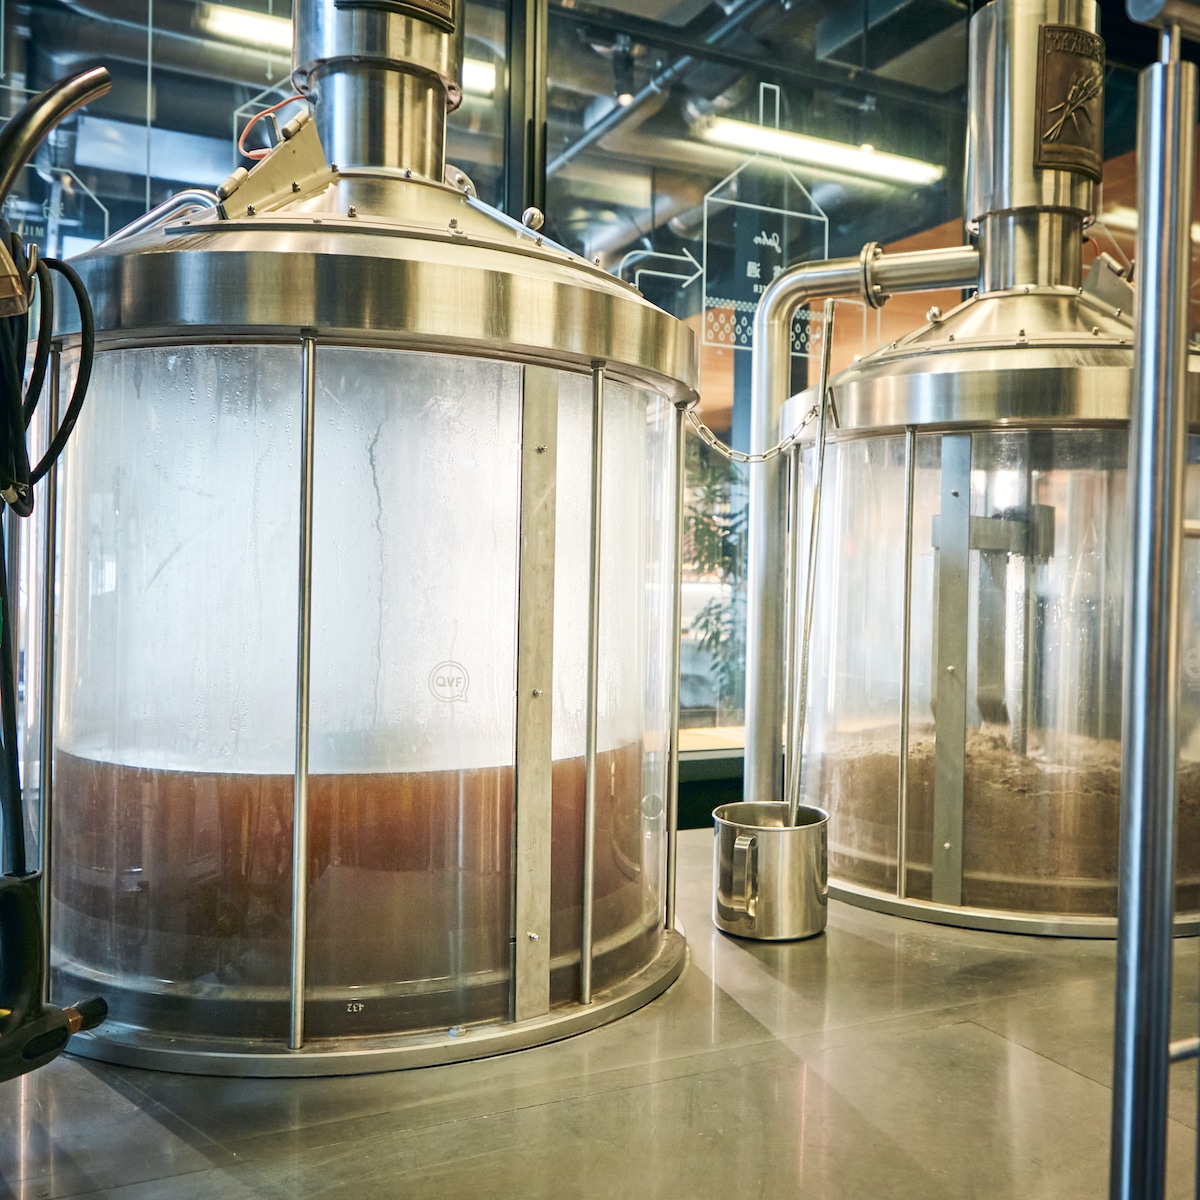 ビール醸造の各段階における状態の変化を、つぶさに見られる機材・設備